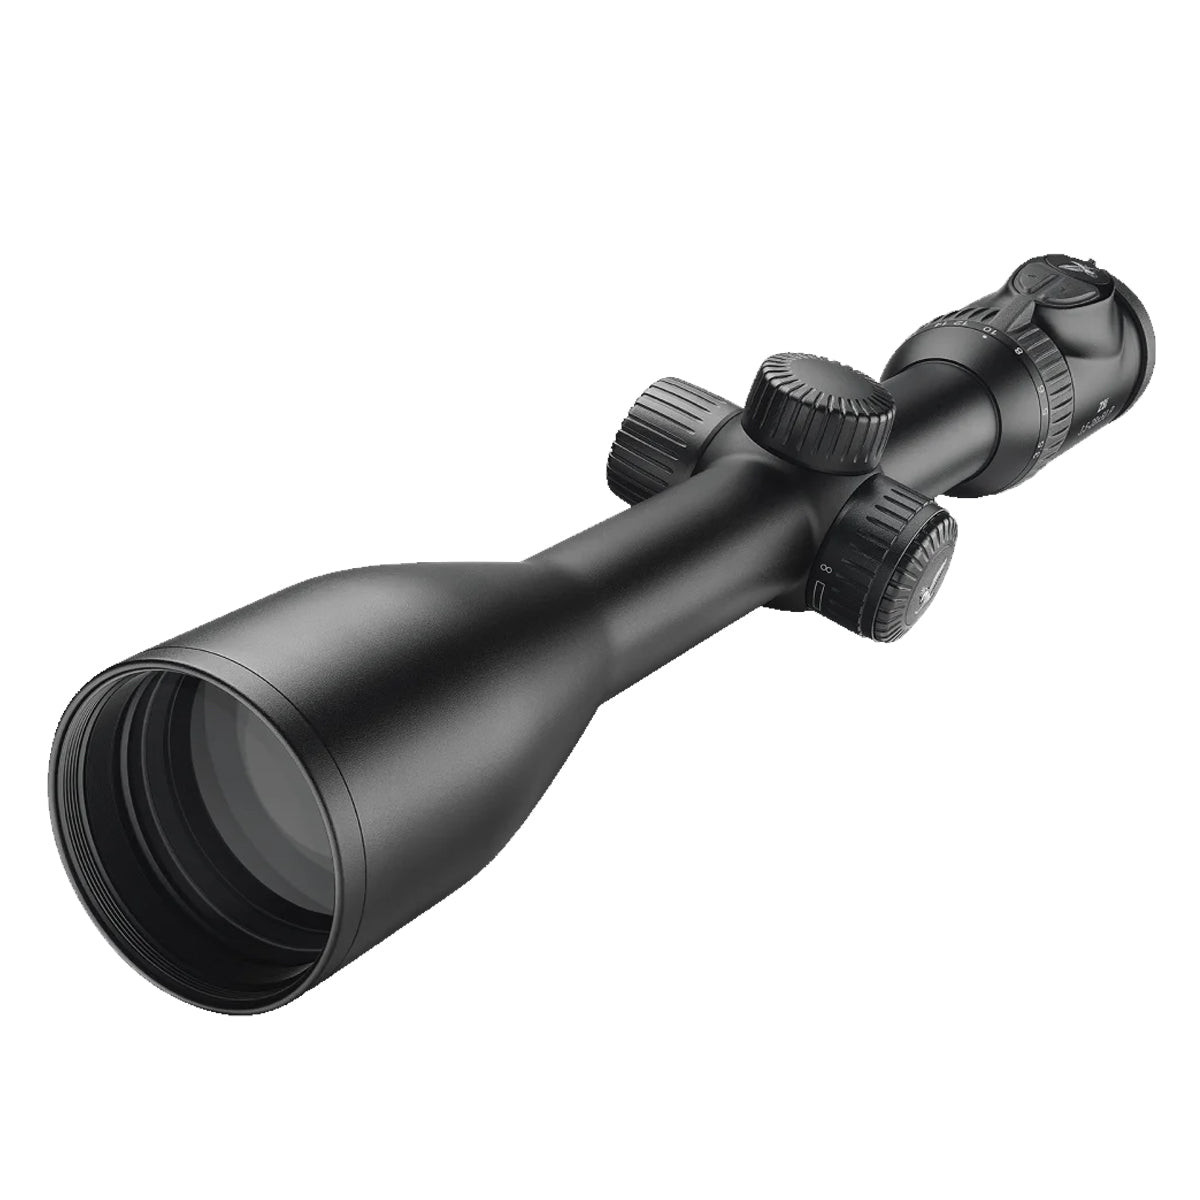 Swarovski Z8i 3.5-28x50 4W-I Riflescope in  by GOHUNT | Swarovski Optik - GOHUNT Shop